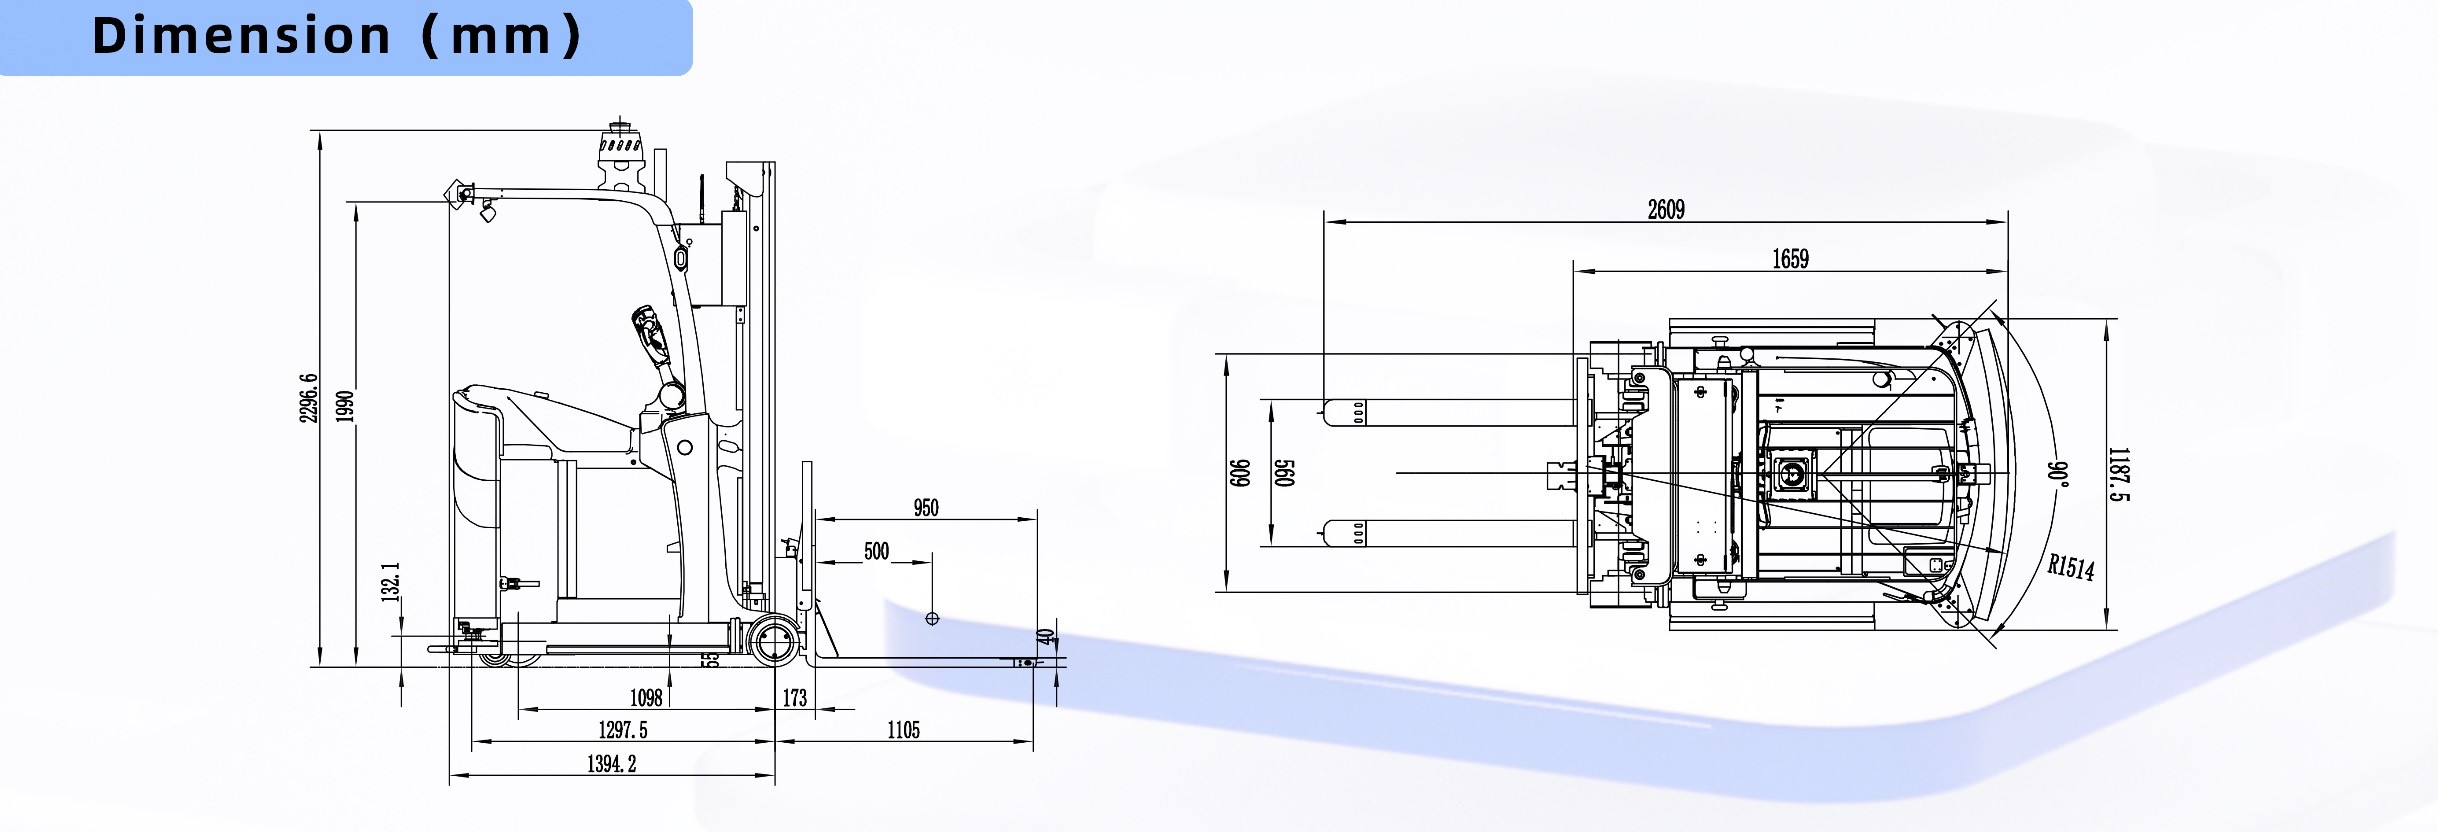 Detalye ng Parameter ng Dimensyon SFL-CDD15-T Smart Forklift